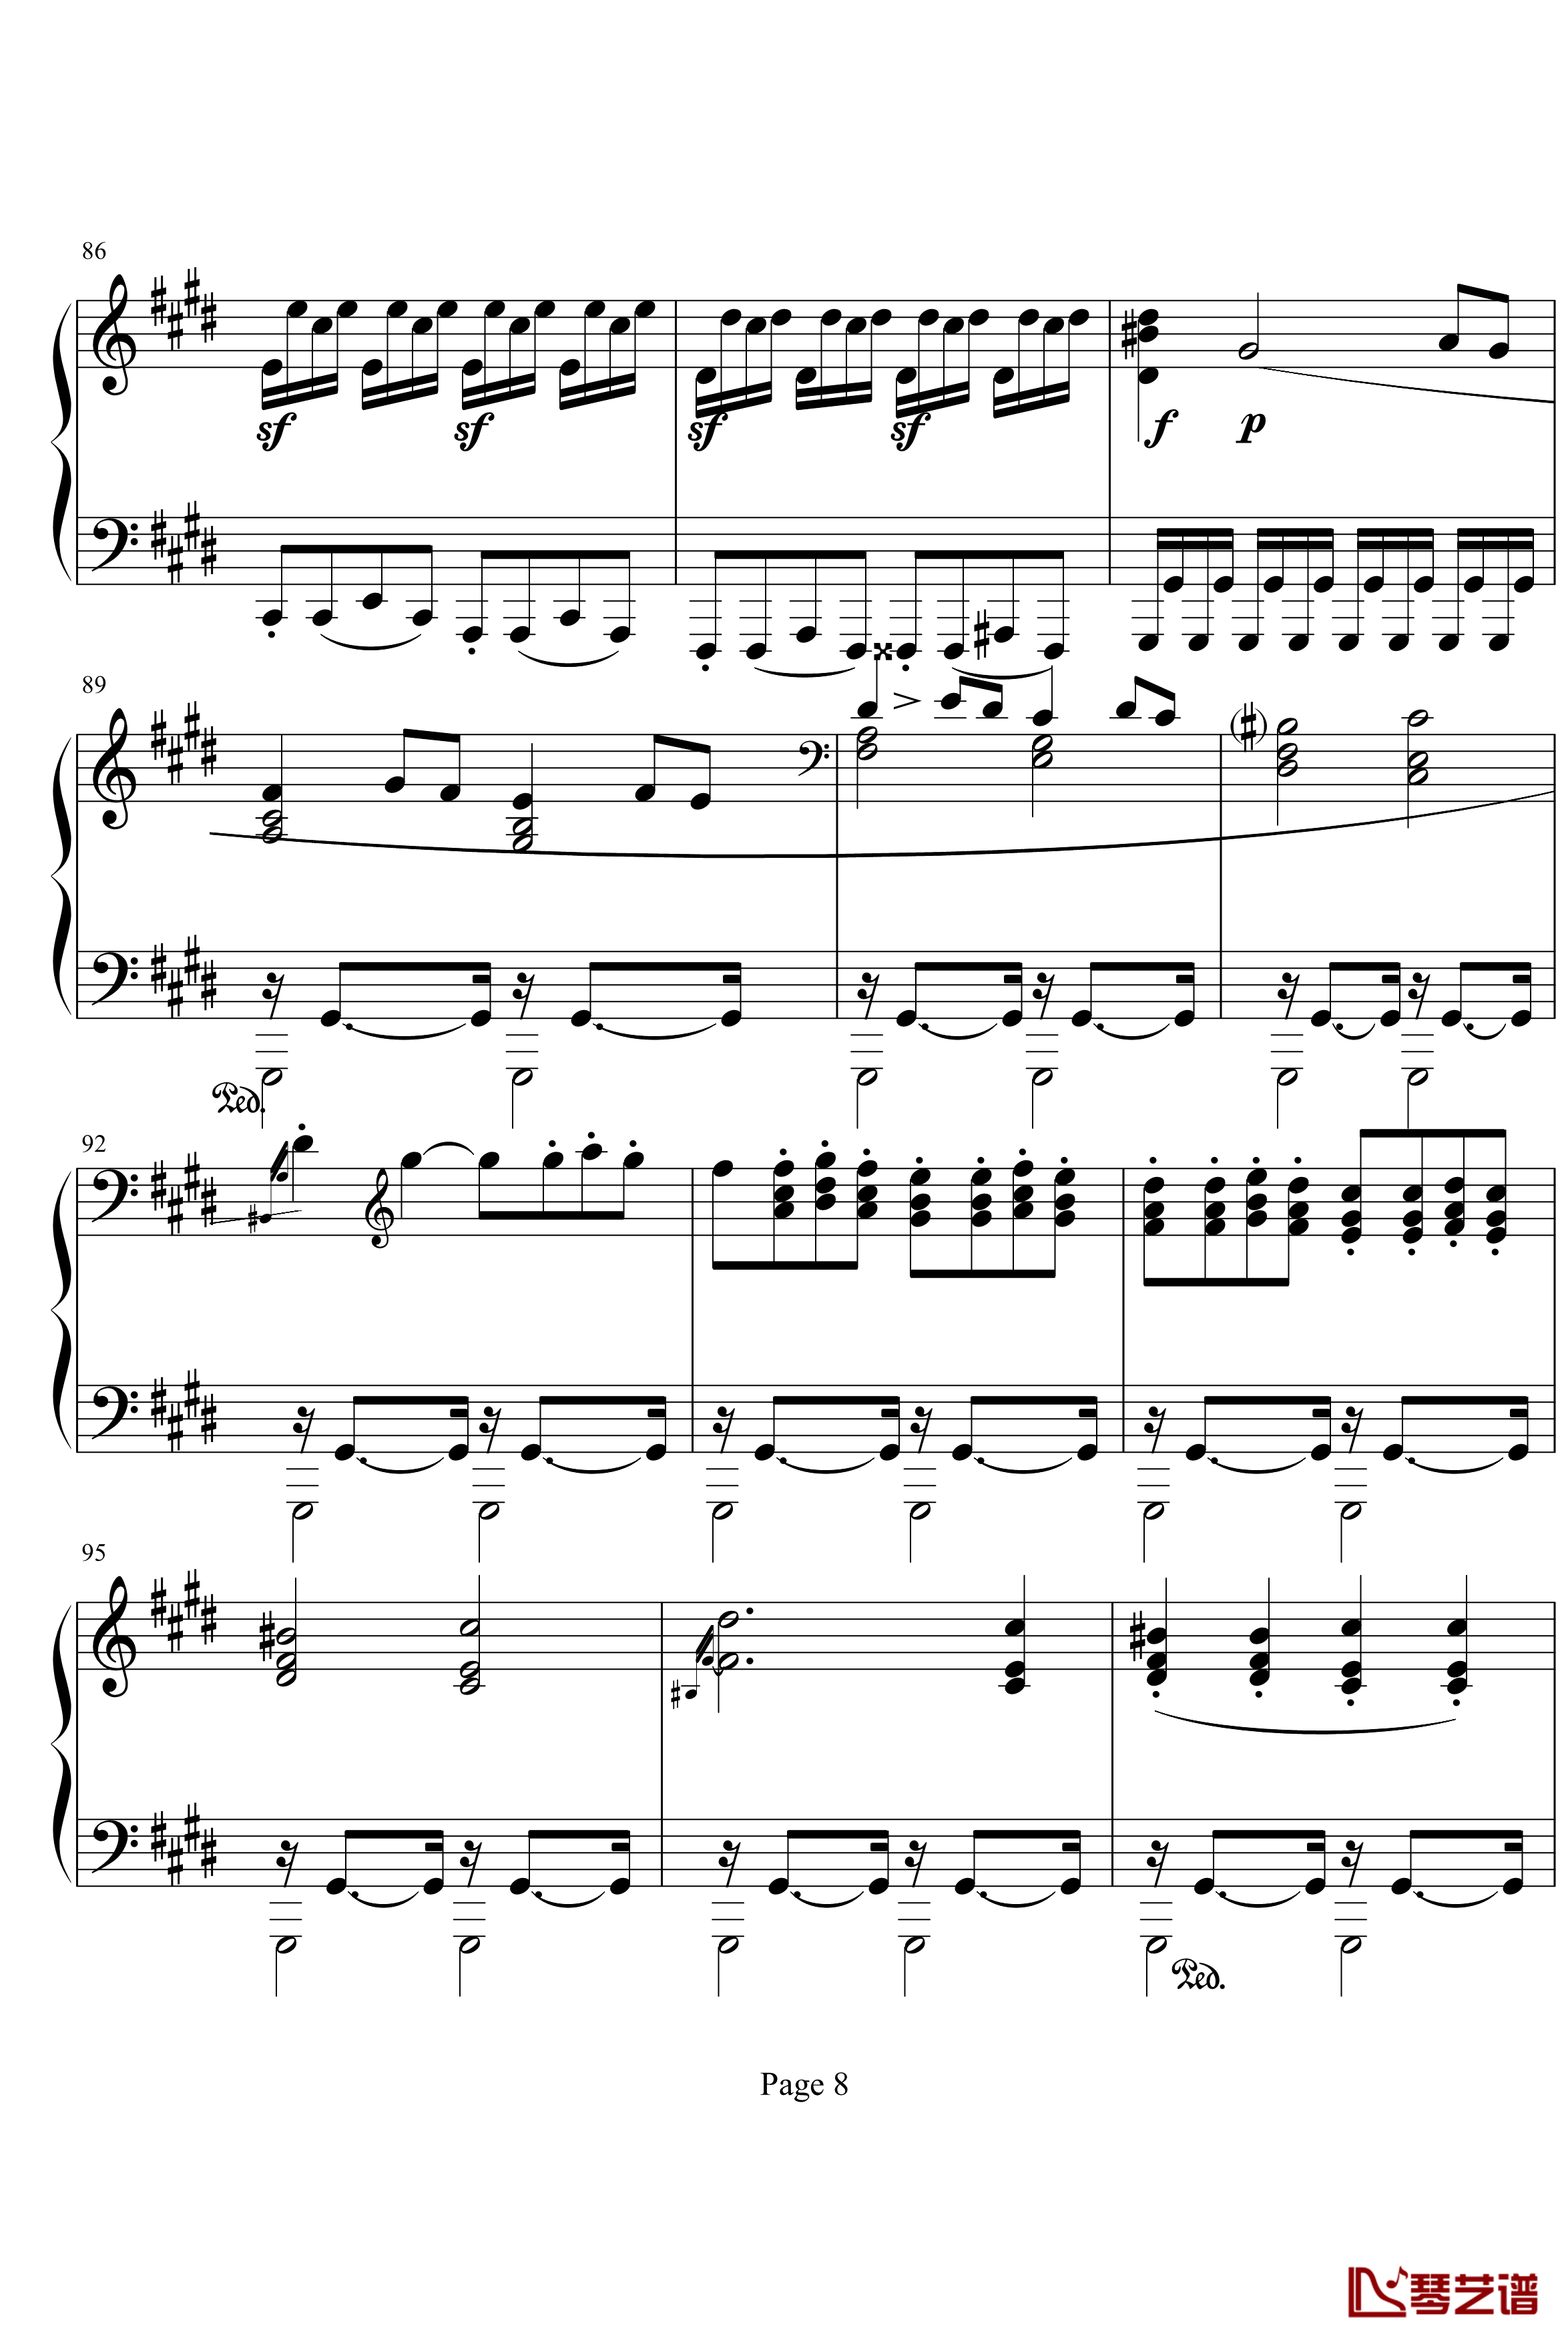 月光奏明曲钢琴谱-作品27之2-贝多芬-beethoven8